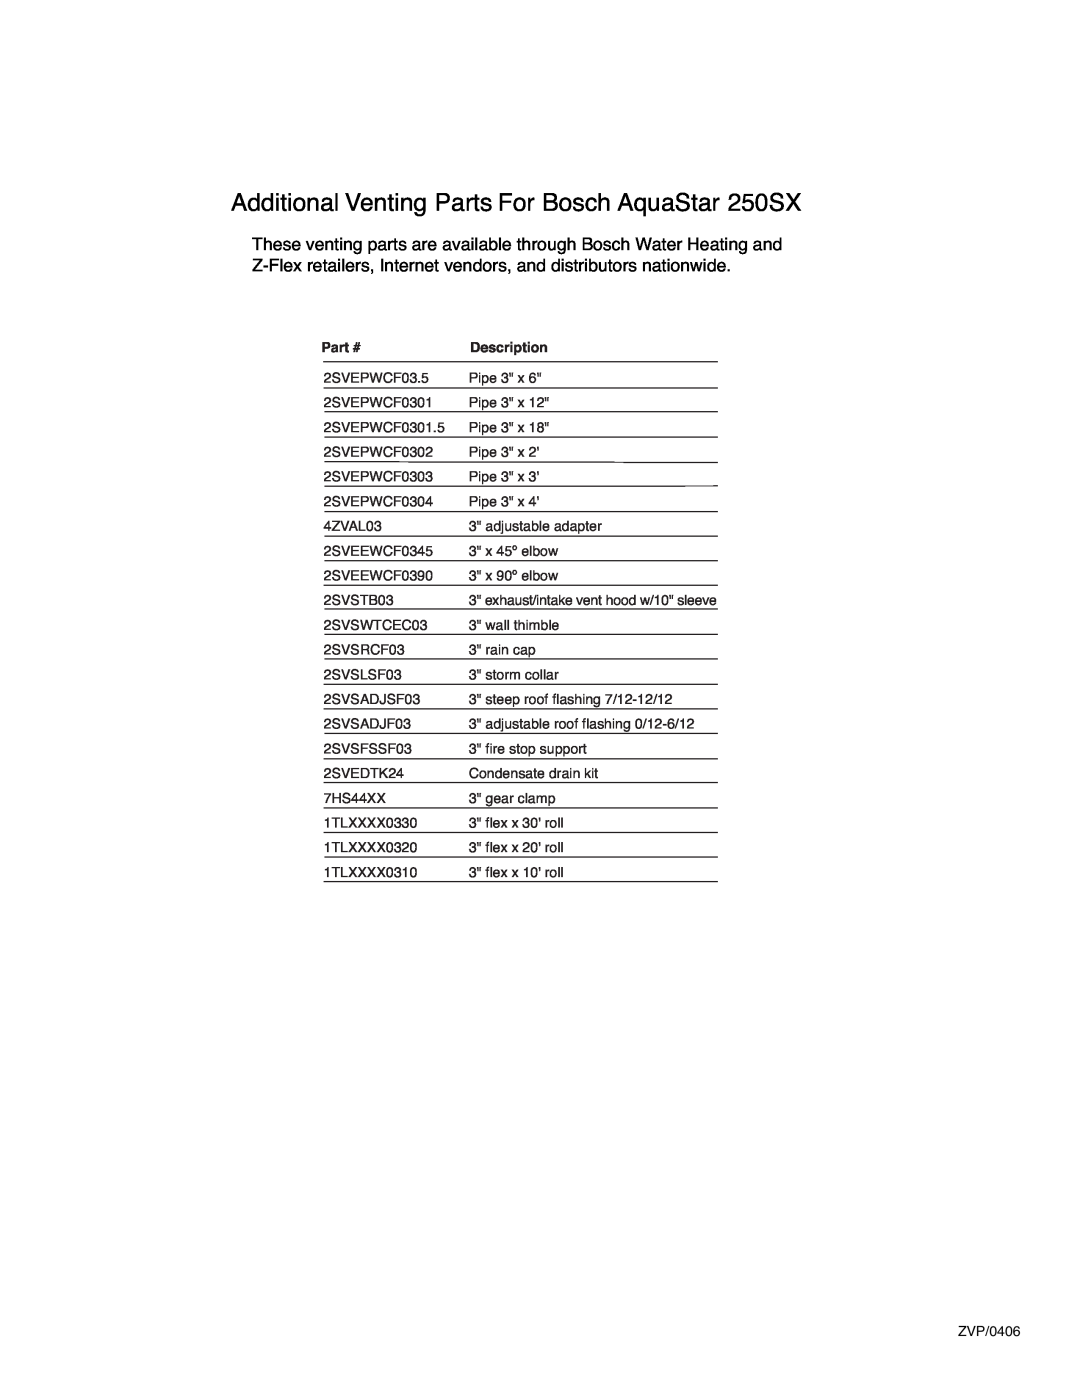 AquaStar AQ3ES installation manual Additional Venting Parts For Bosch AquaStar 250SX, Description 